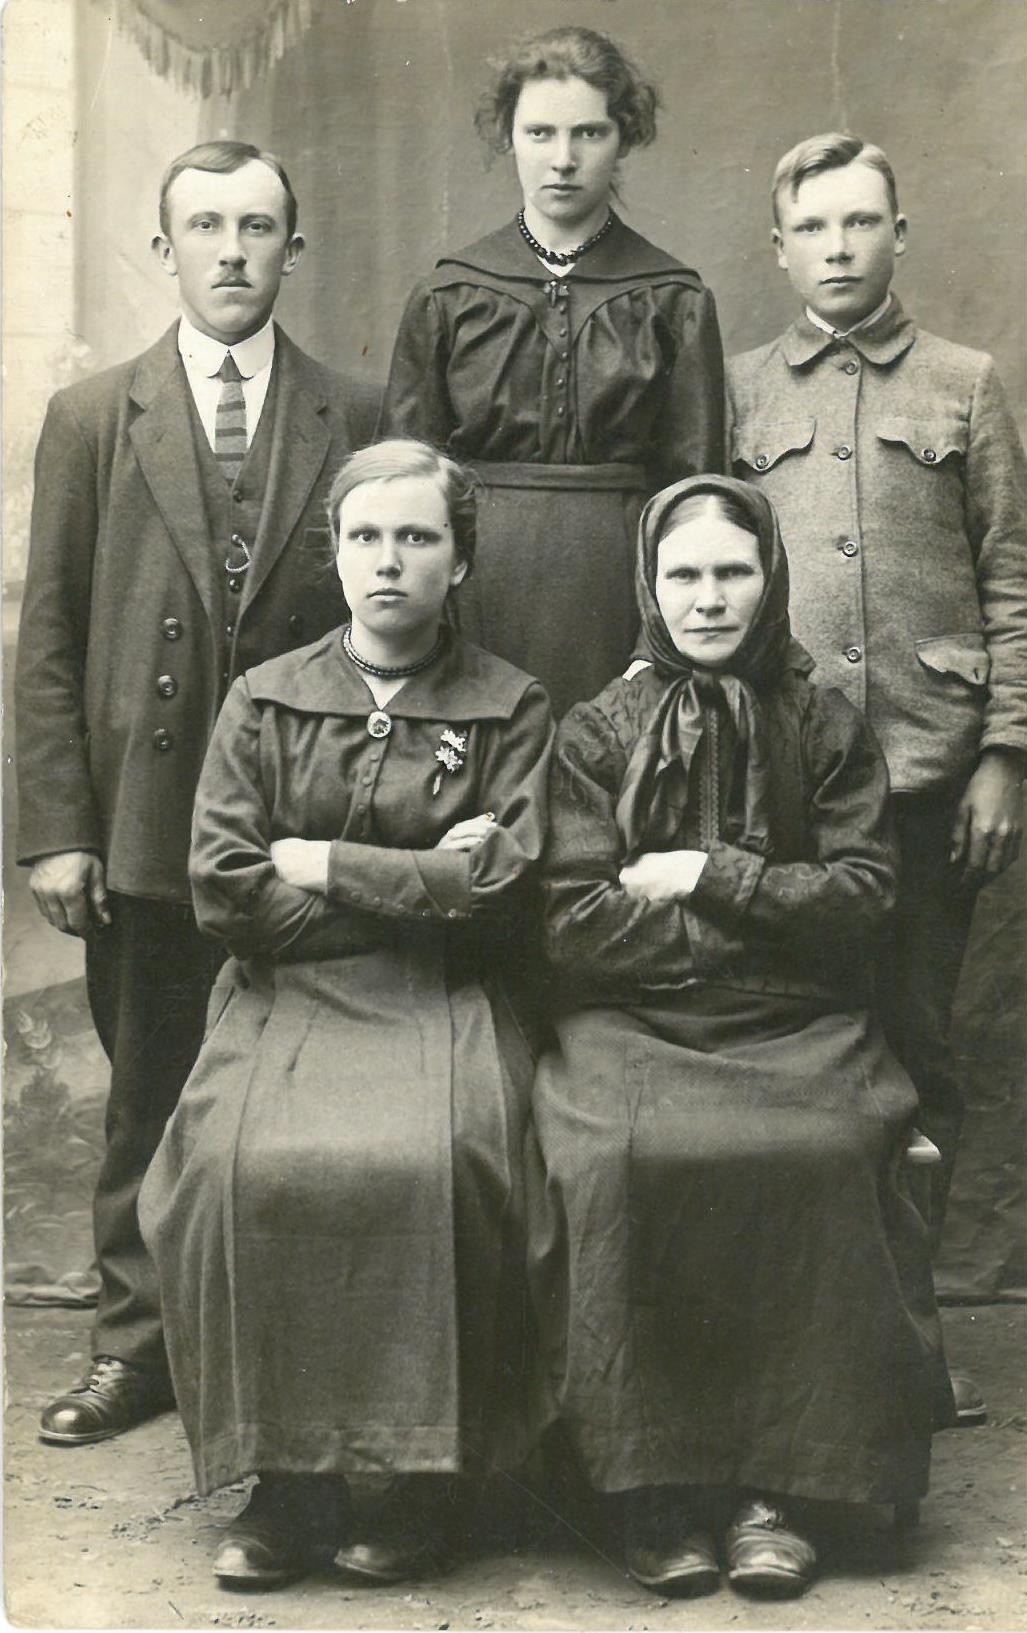 Balčiūnų šeima Joniškyje. Pirmoje eilėje iš kairės: Kazio Balčiūno sesuo Veronika Balčiūnaitė, motina Elena Balčiūnienė. Antroje eilėje iš kairės: brolis Juozas Balčiūnas, sesuo Elena Balčiūnaitė ir pats Kazys Balčiūnas